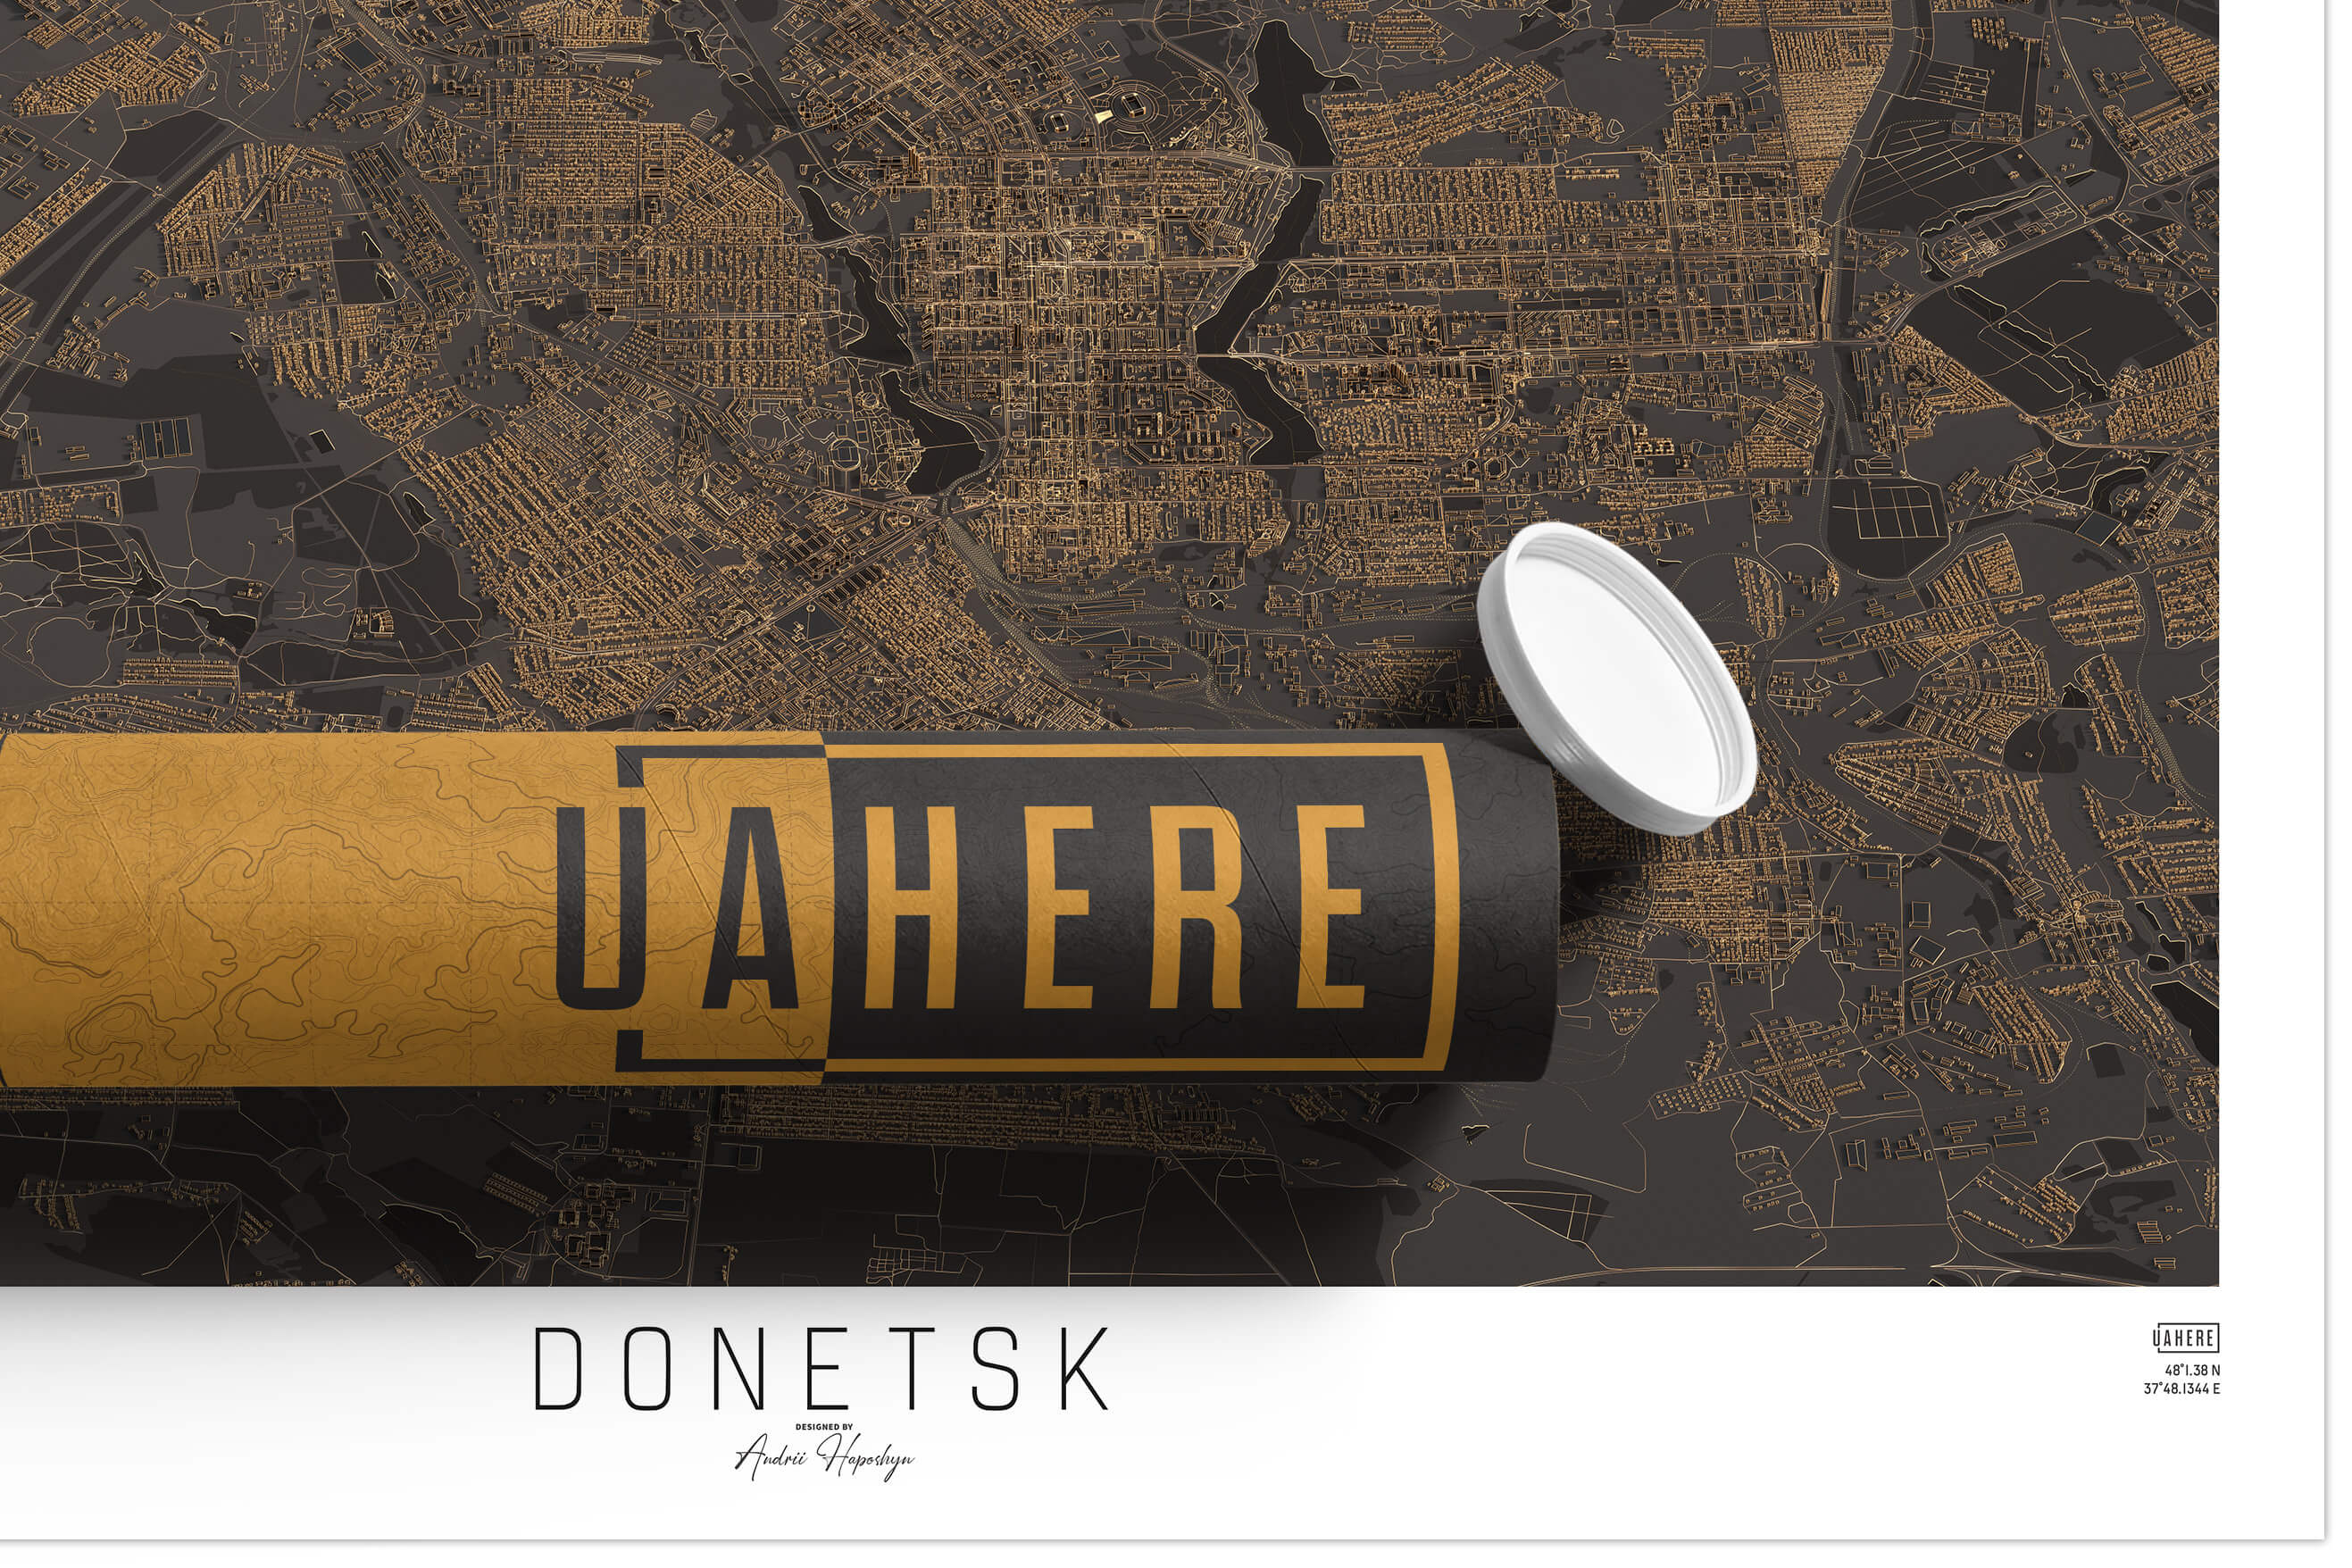 Брендований тубус UAHERE та надрукована стільна темна 3д мапа Донецьку